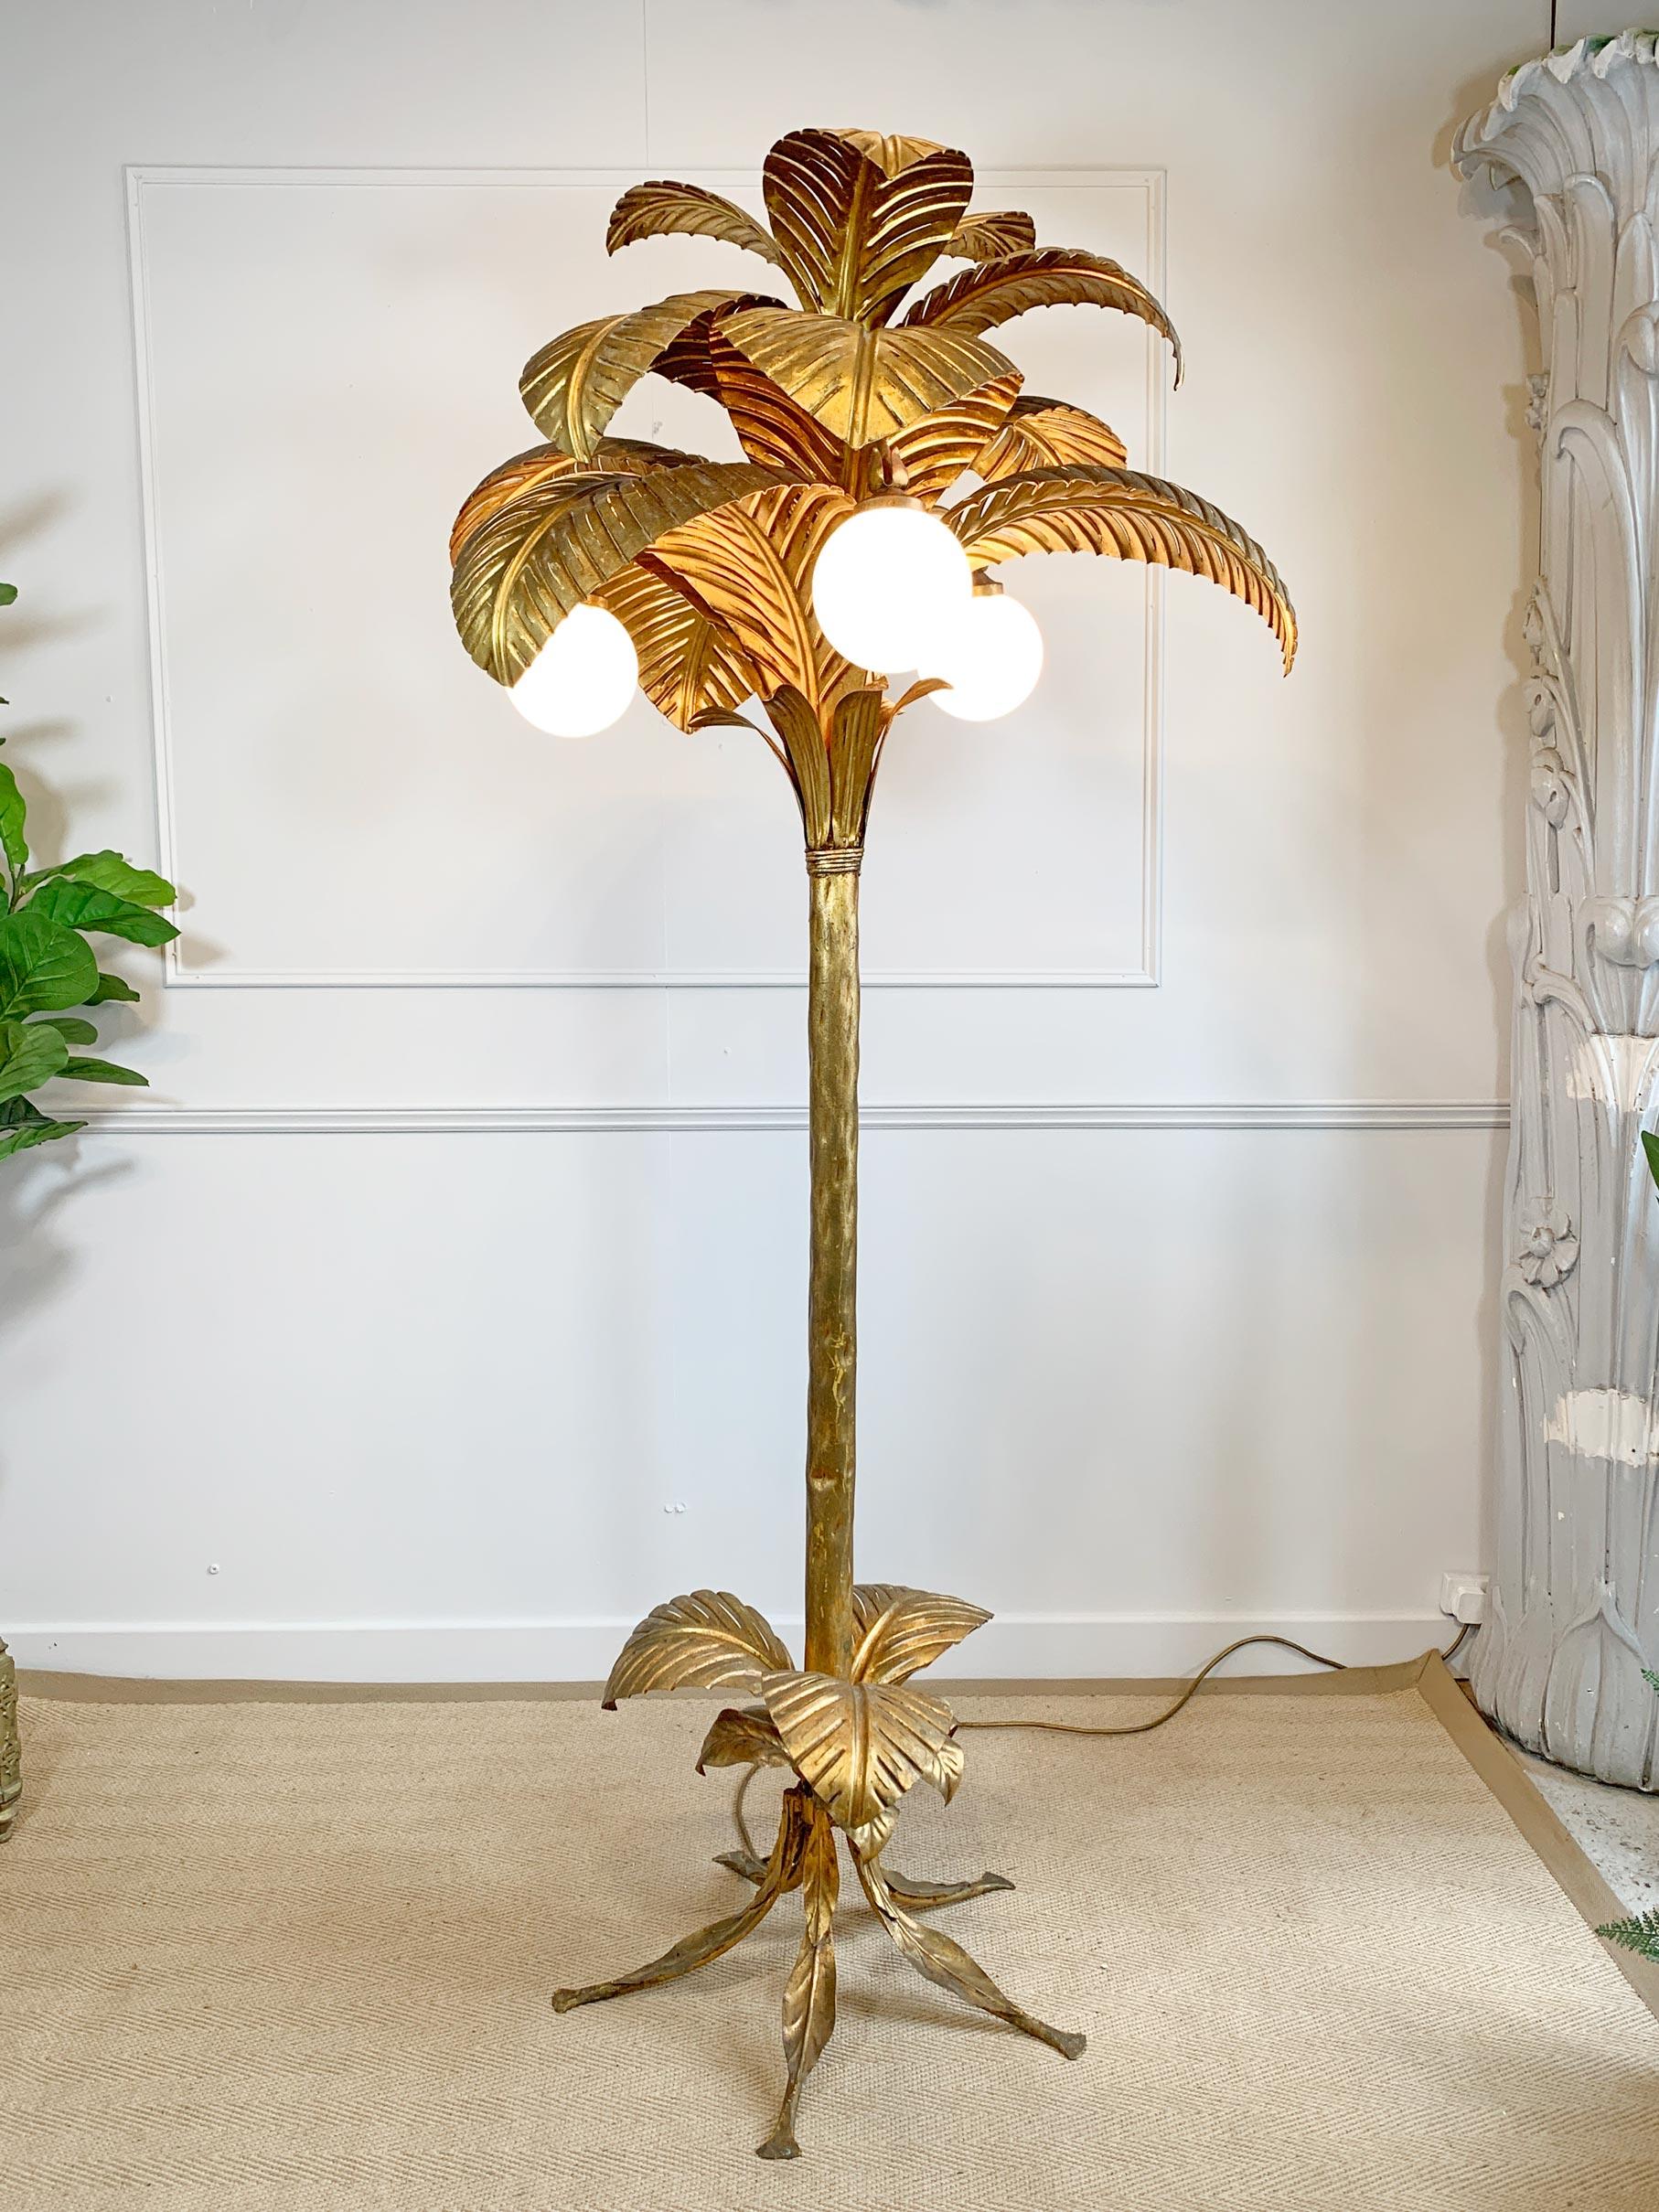 Lampadaire Palm Tree absolument époustouflant, conçu par Sergio Terzani dans les années 1970. Cette lampe de grande taille est l'une des plus rares et des plus désirables dans sa finition dorée à la feuille d'or d'origine, à ne pas confondre avec